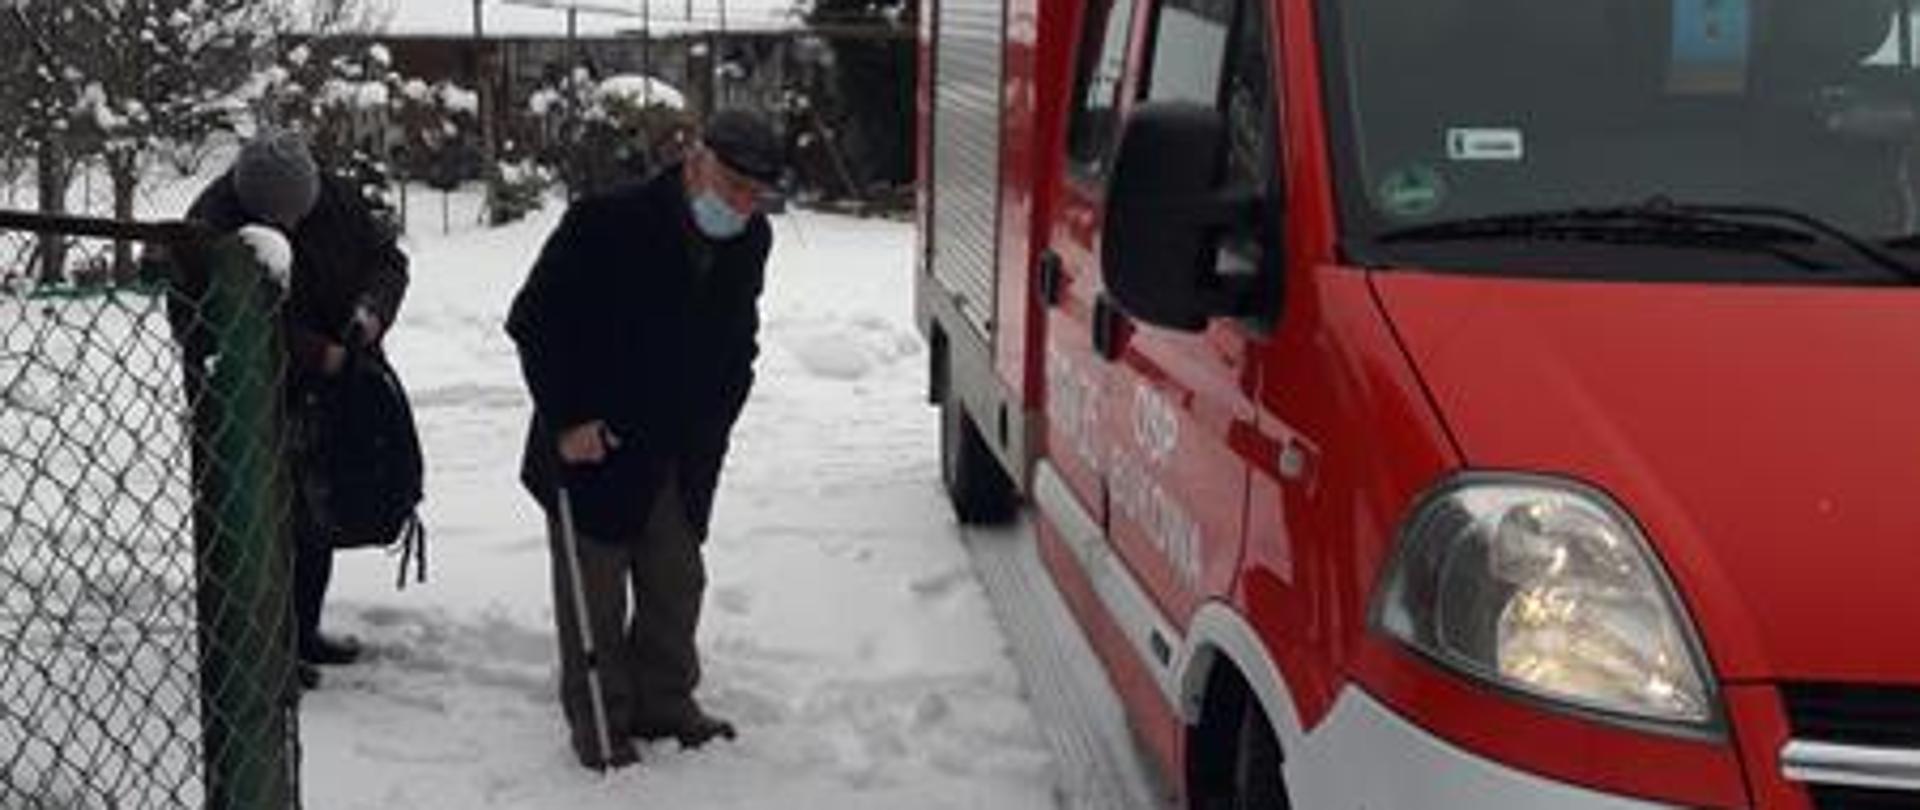 Na posesji znajduje się samochód pożarniczy koloru czerwonego. Dwie starsze osoby znajdują się obok pojazdu przygotowując się do transportu samochodem do punktu szczepień.